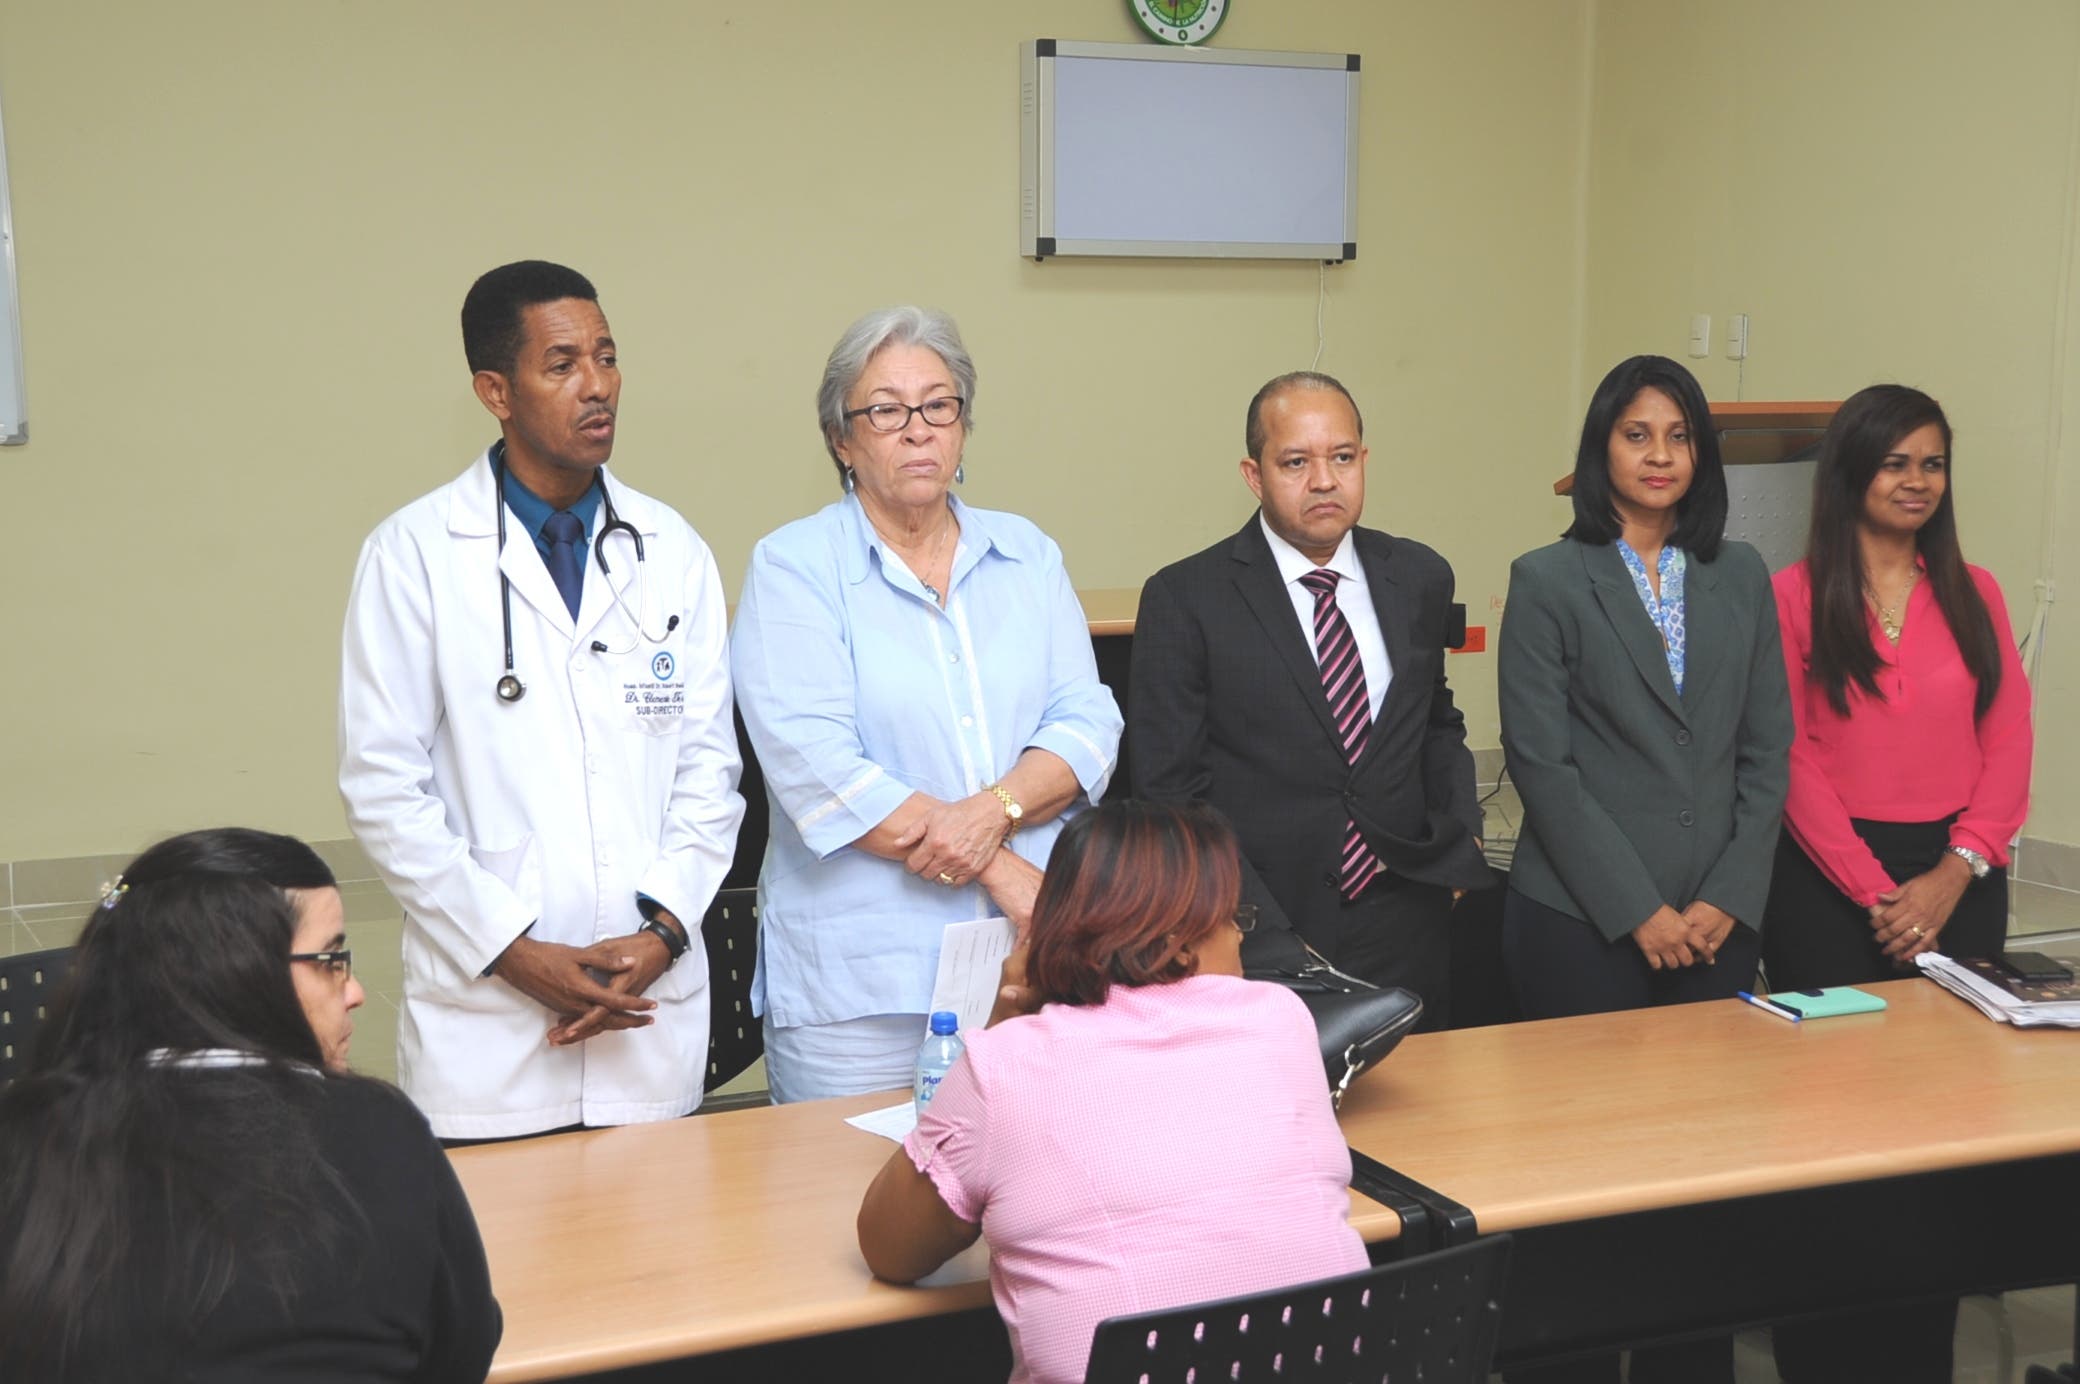 La ministra de Salud visita el hospital Robert Reid Cabral